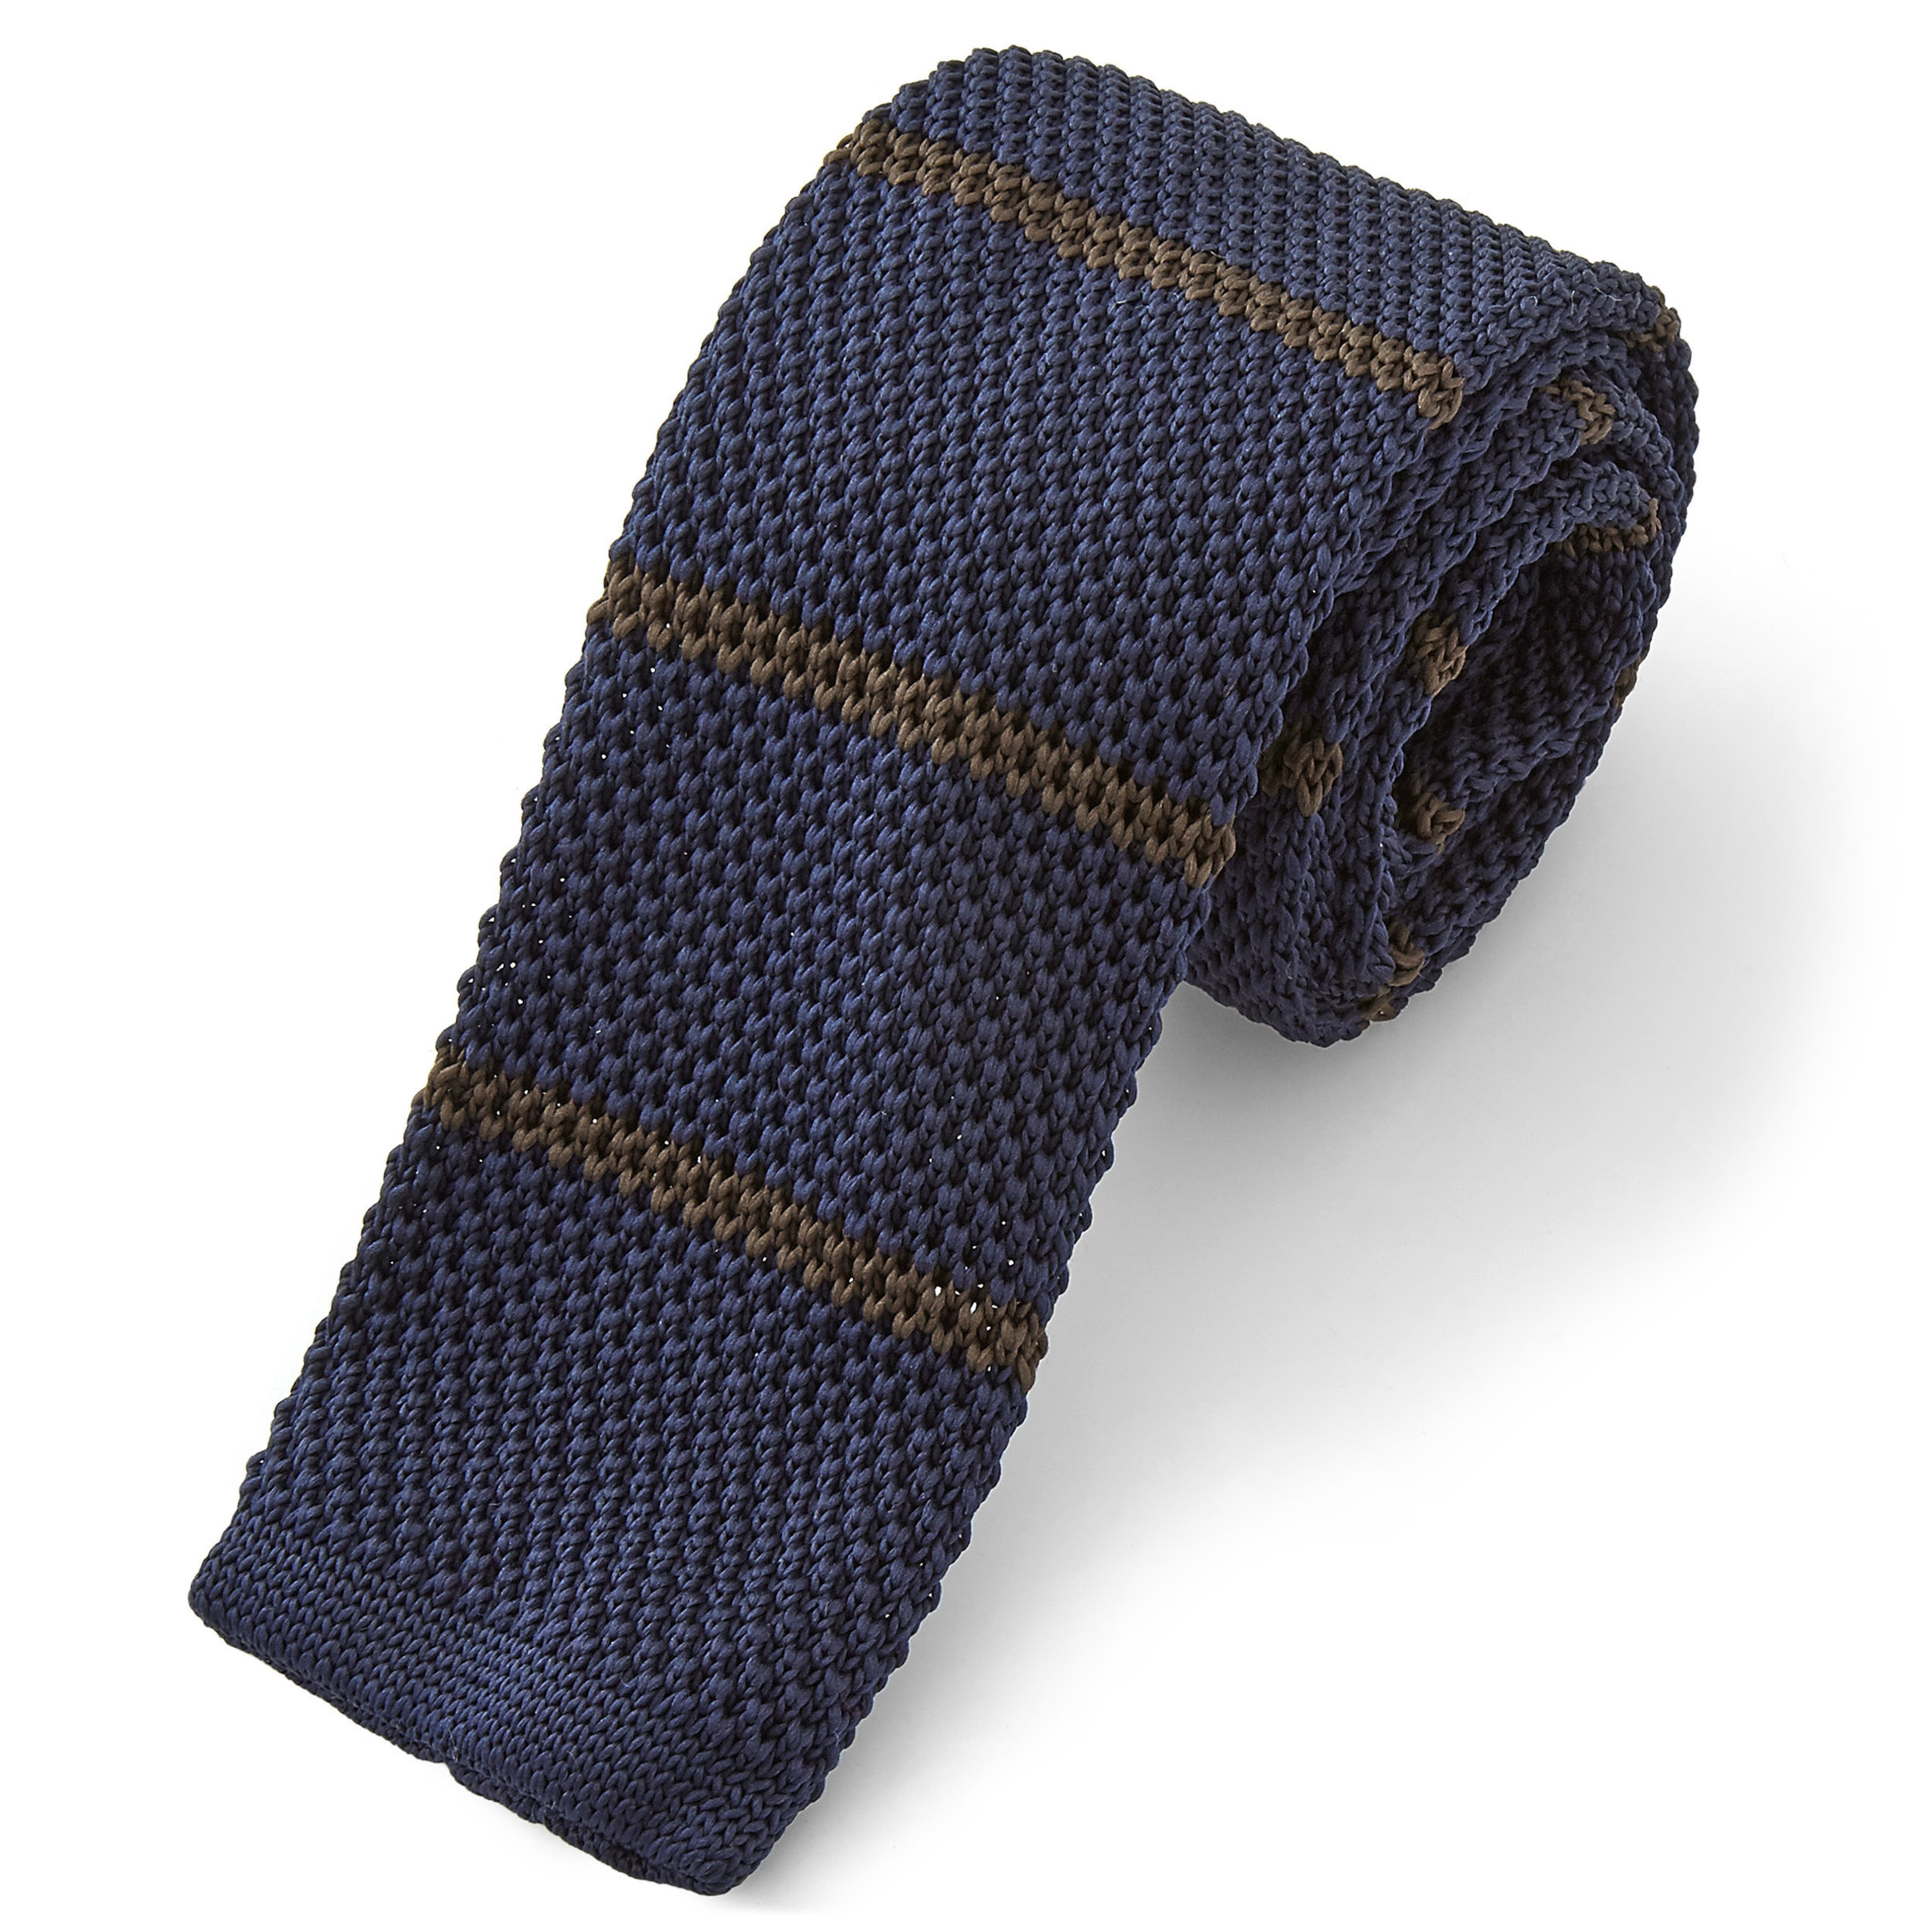 Marineblauwe & bruine gebreide stropdas